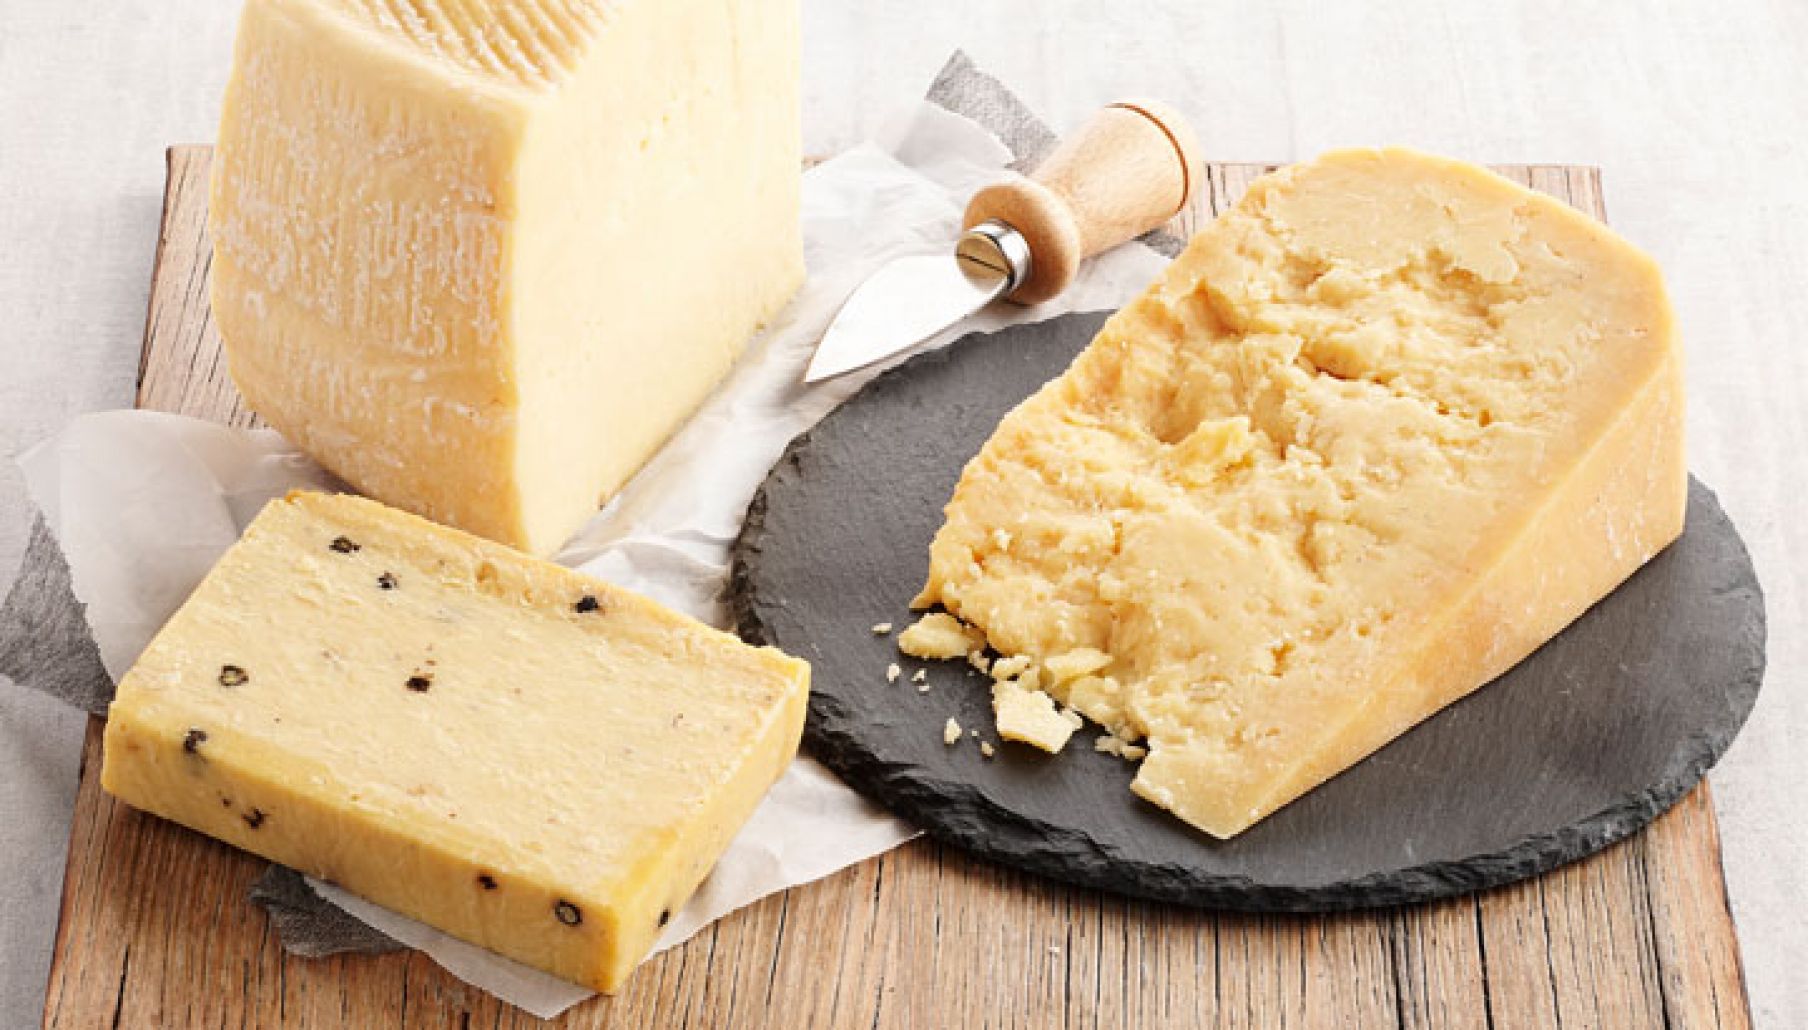 طريقة عمل الجبنة الرومي التركي في البيت وبأقل التكاليف وطعمها تحفه